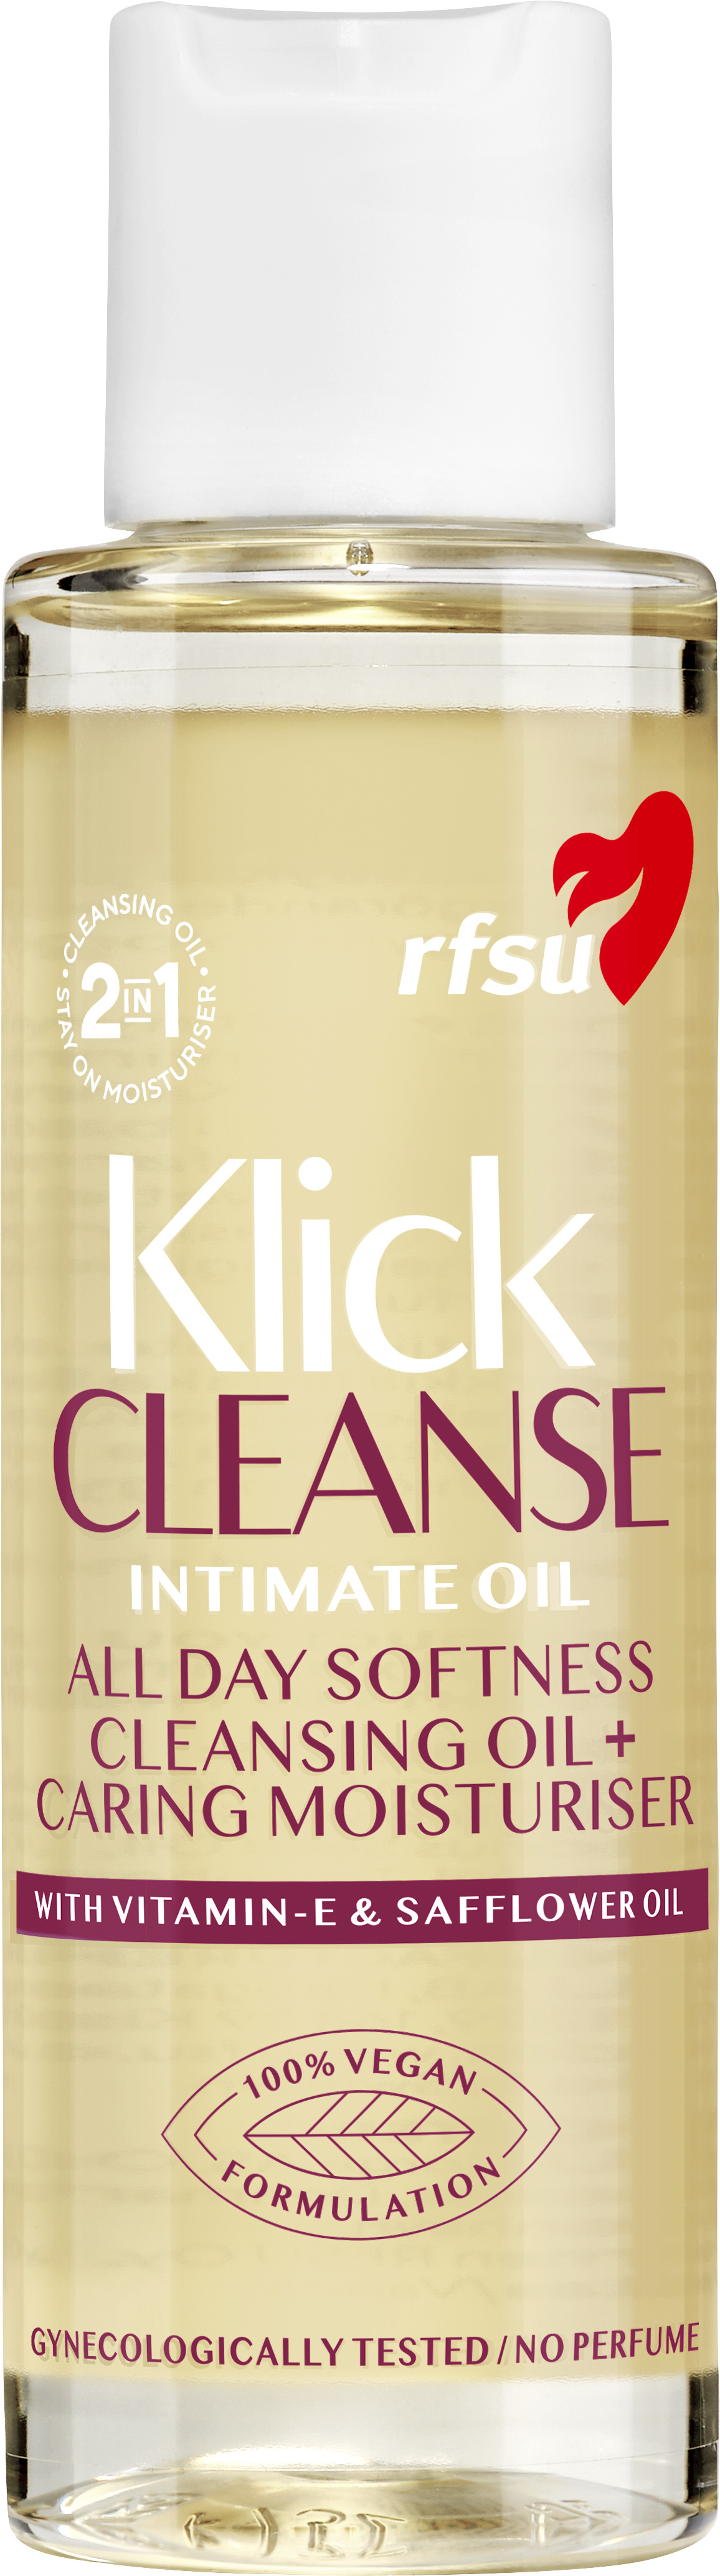 RFSU Klick Cleanse Intimate Oil 100 ml